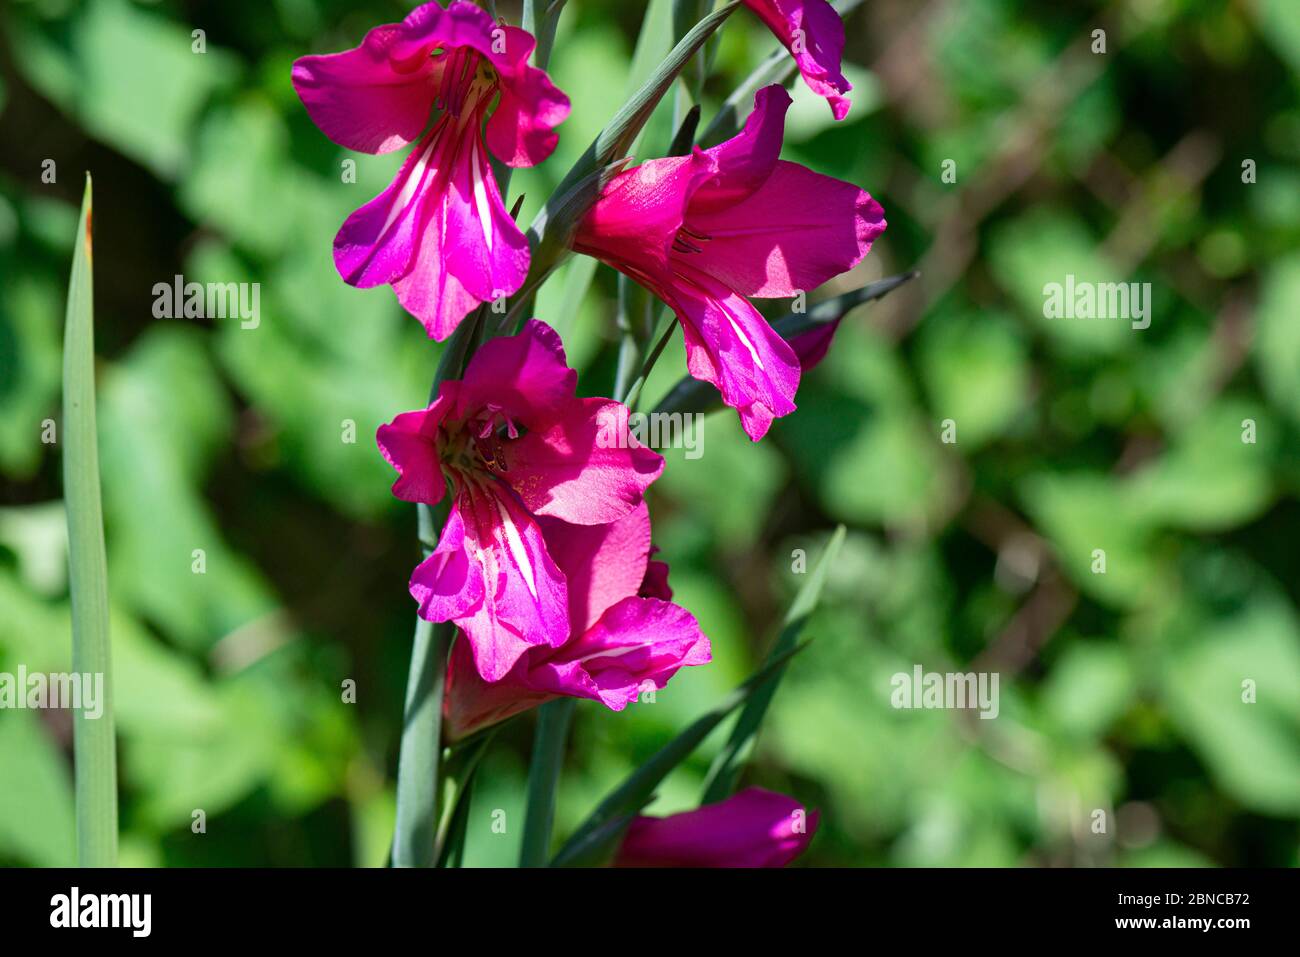 The flowers of a Byzantine gladiolus (Gladiolus communis subsp. byzantinus) Stock Photo